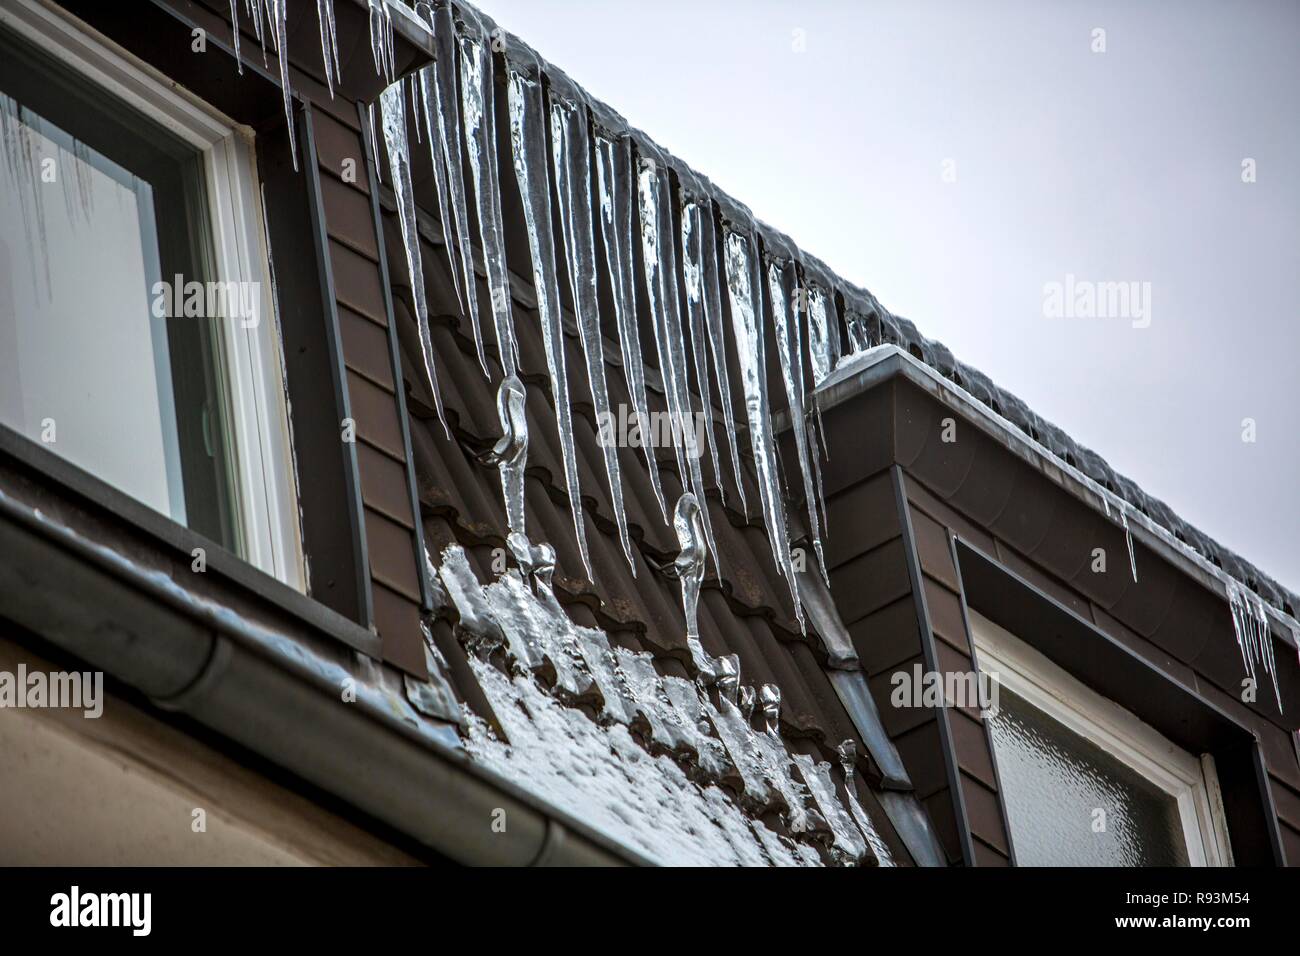 Gros Glaçons pendant de l'avant-toit d'une maison, signe d'un toit mal isolés thermiquement, Essen, Rhénanie du Nord-Westphalie, Allemagne Banque D'Images